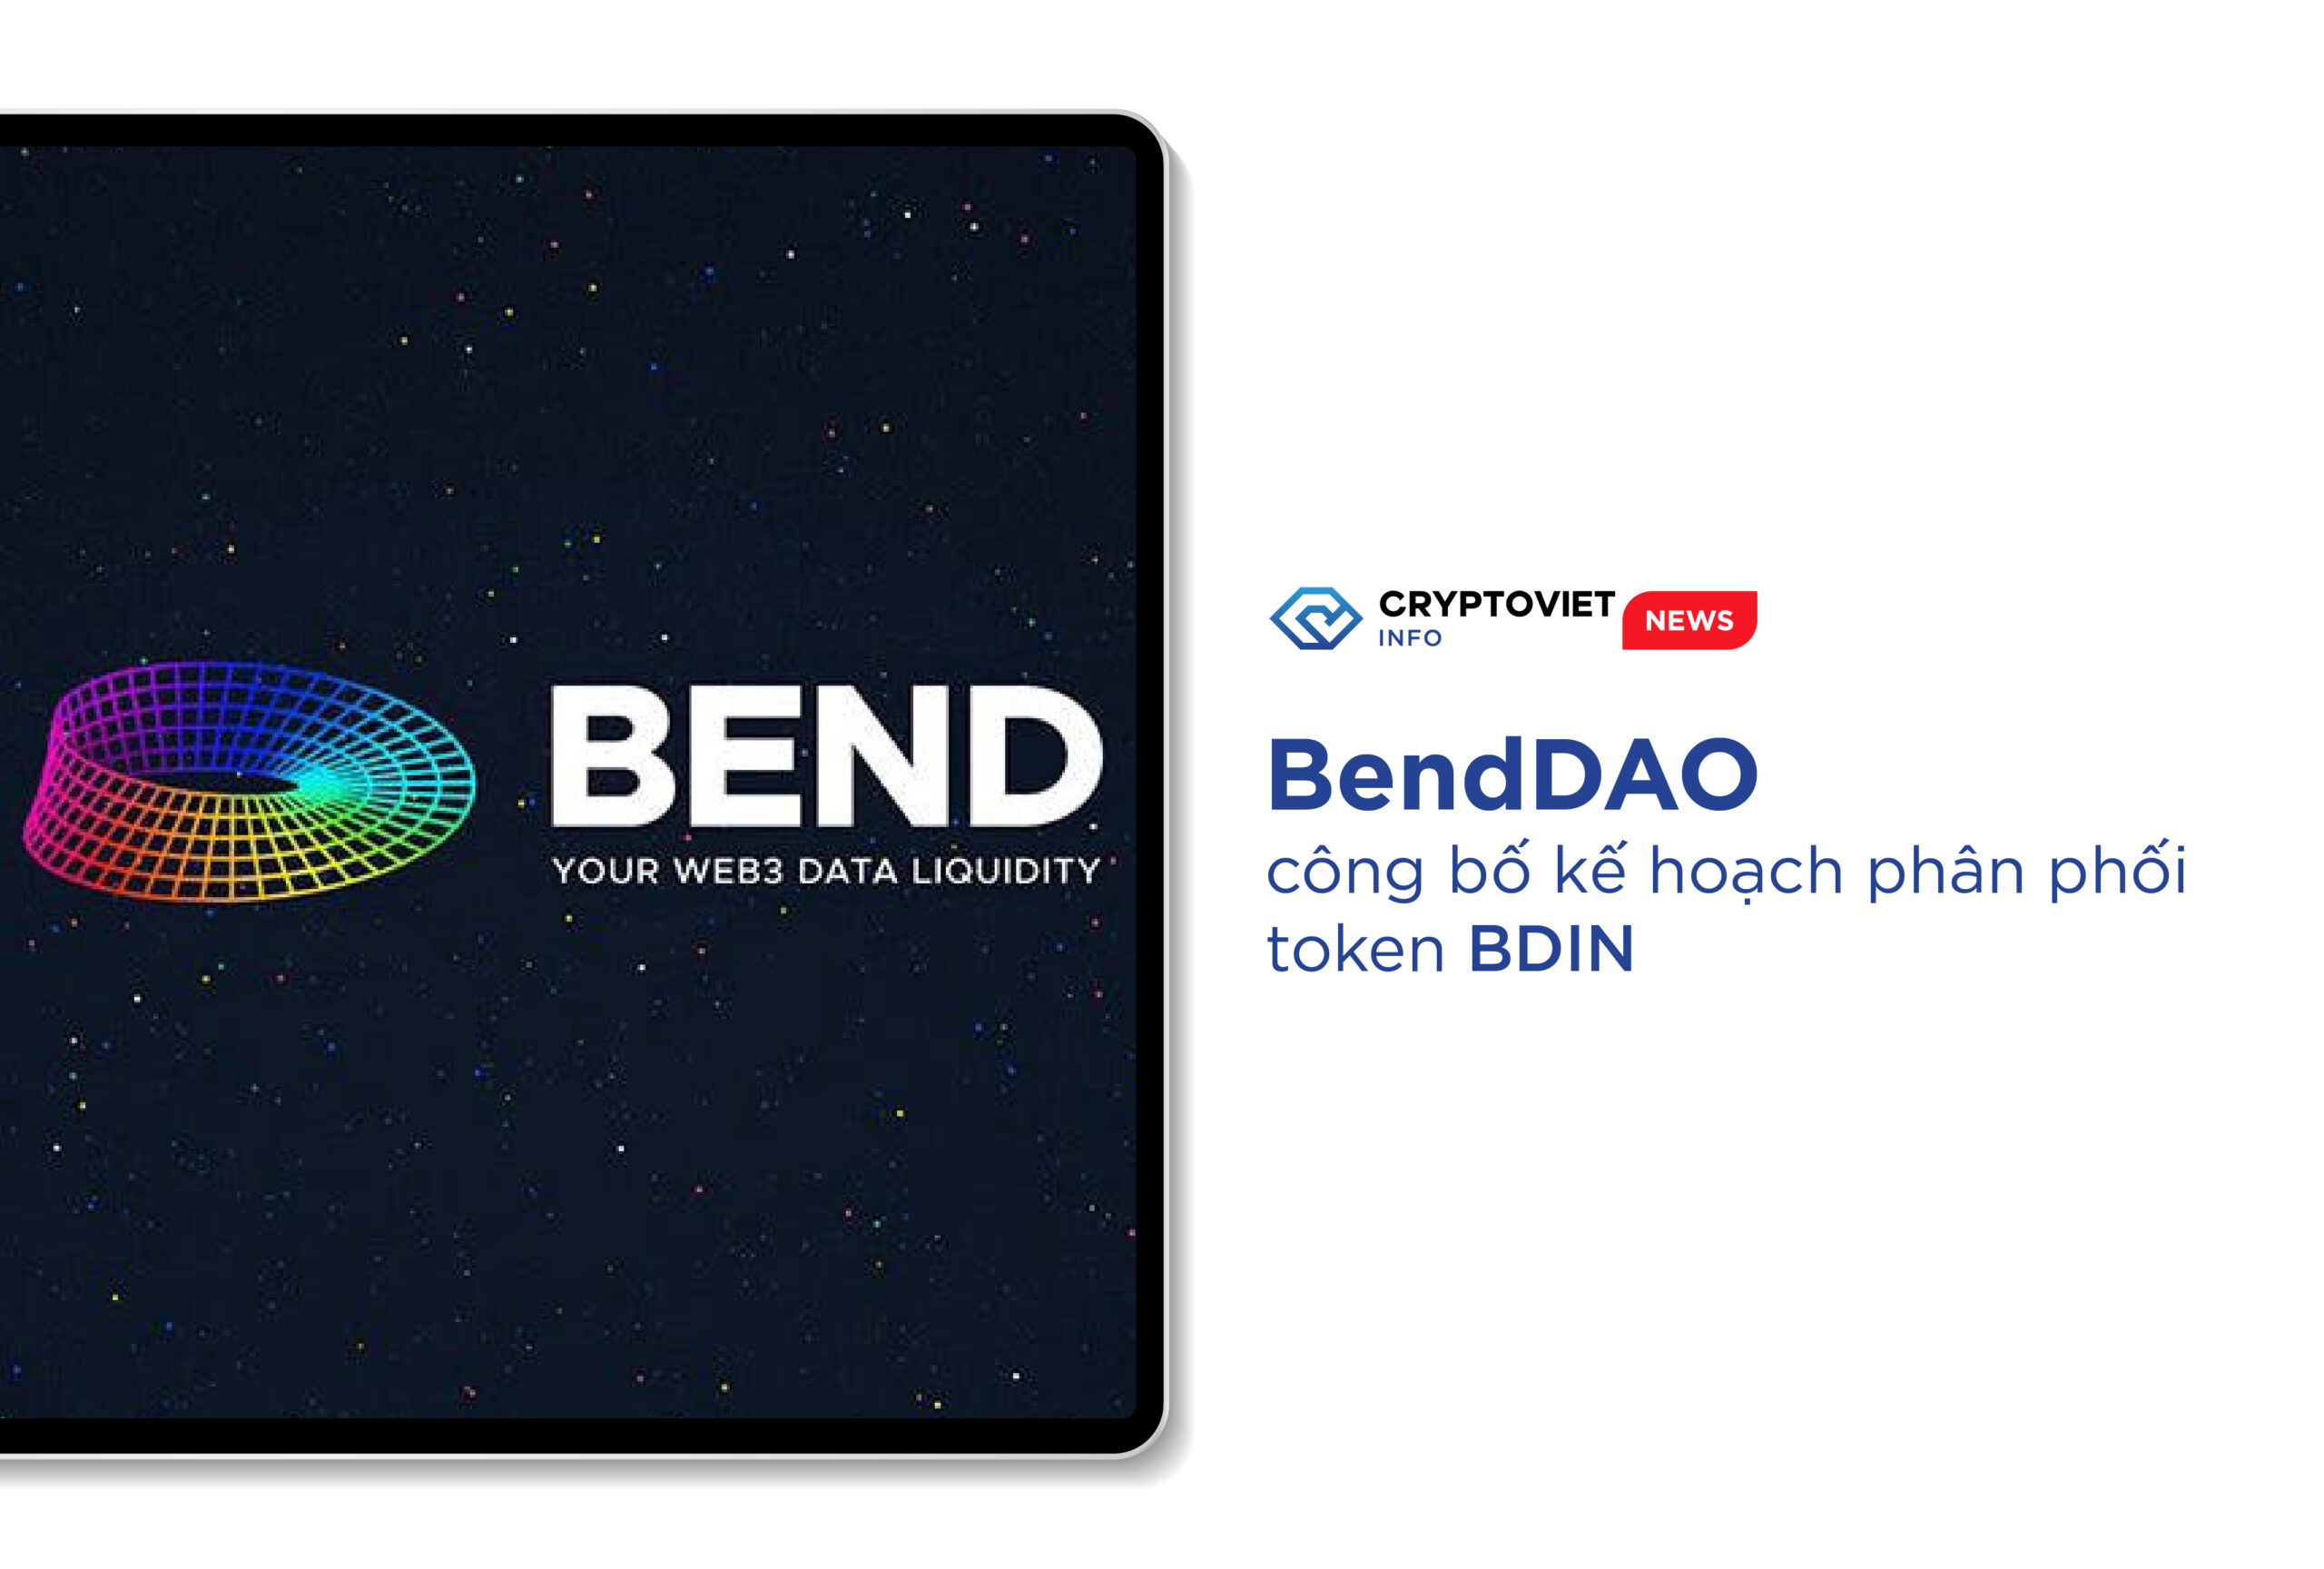 BendDAO công bố kế hoạch phân phối token BDIN